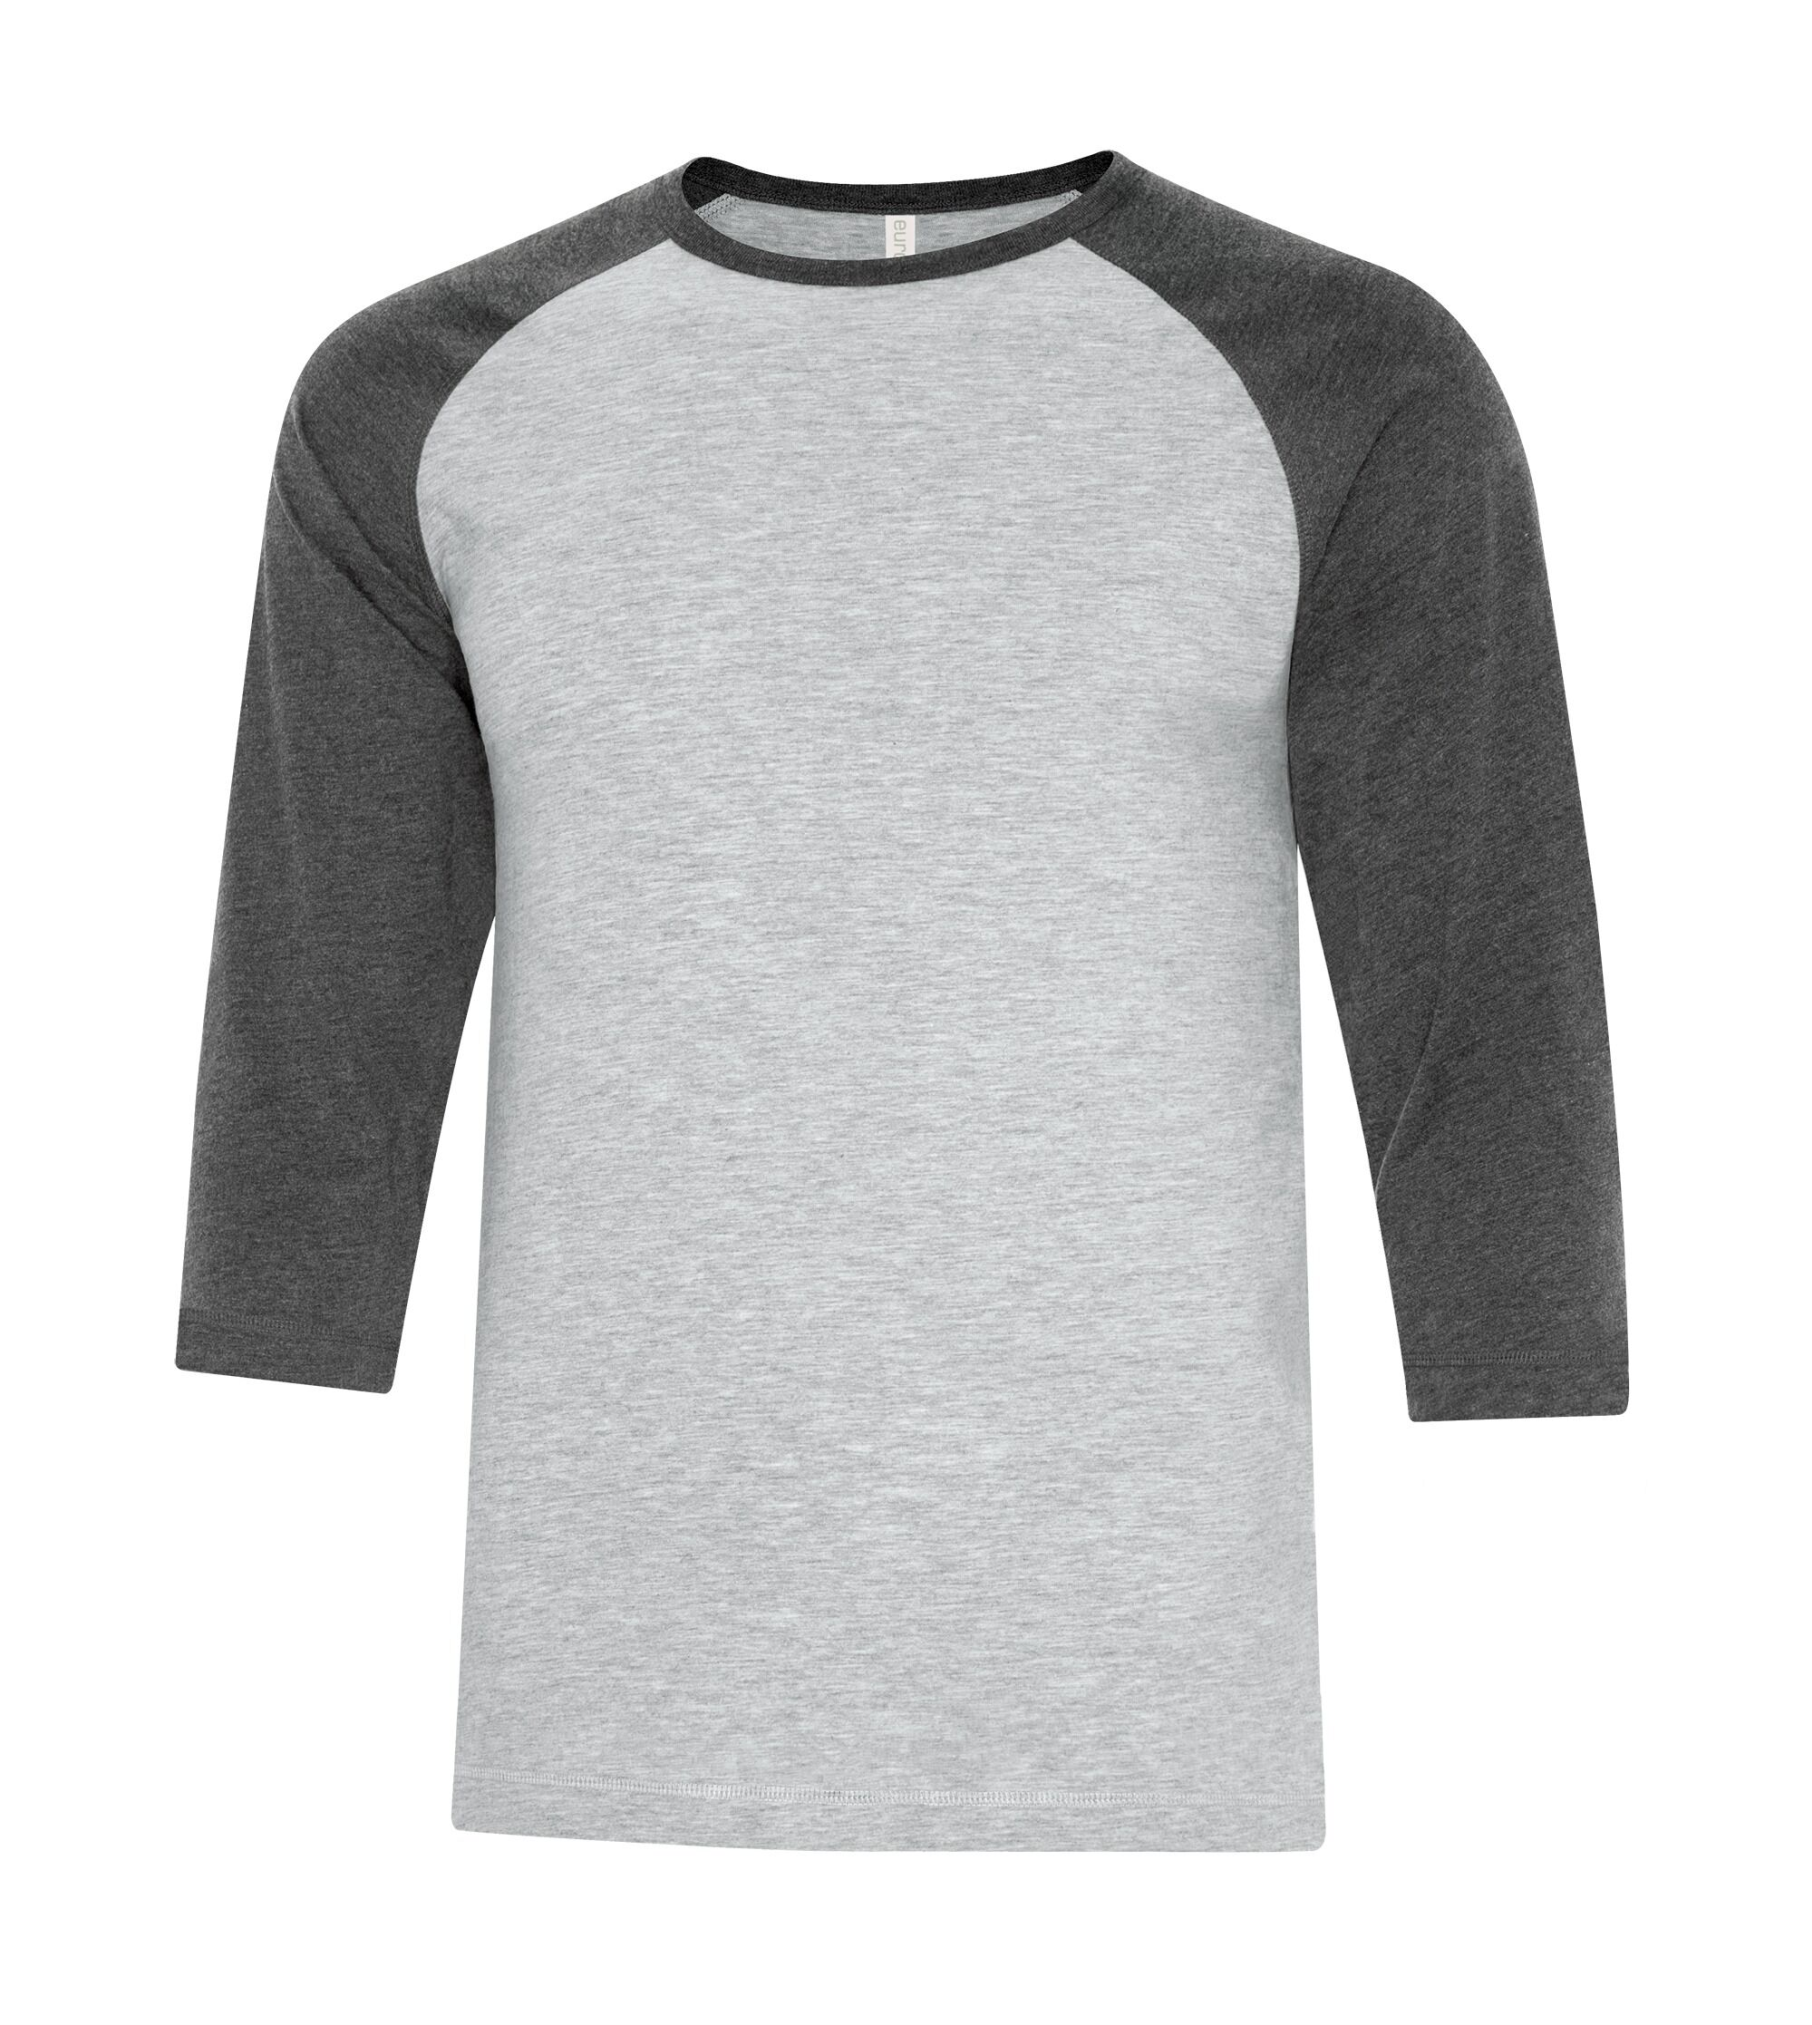 Adult Baseball grey/white Shirt - Cotton - ATC 0822